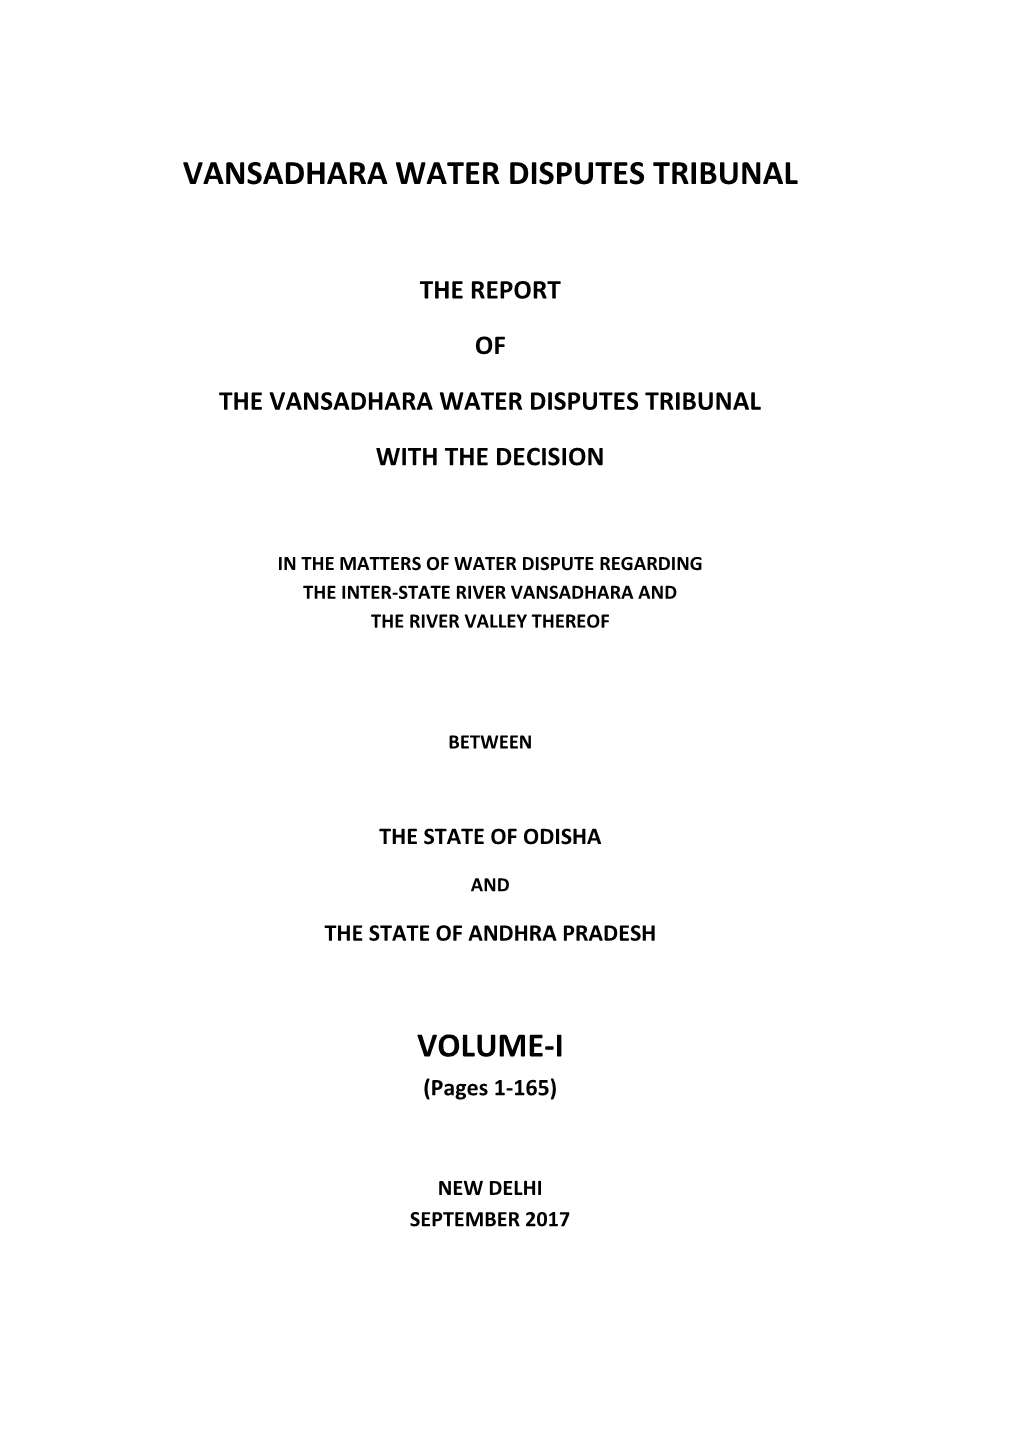 Vansadhara Water Disputes Tribunal Volume-I